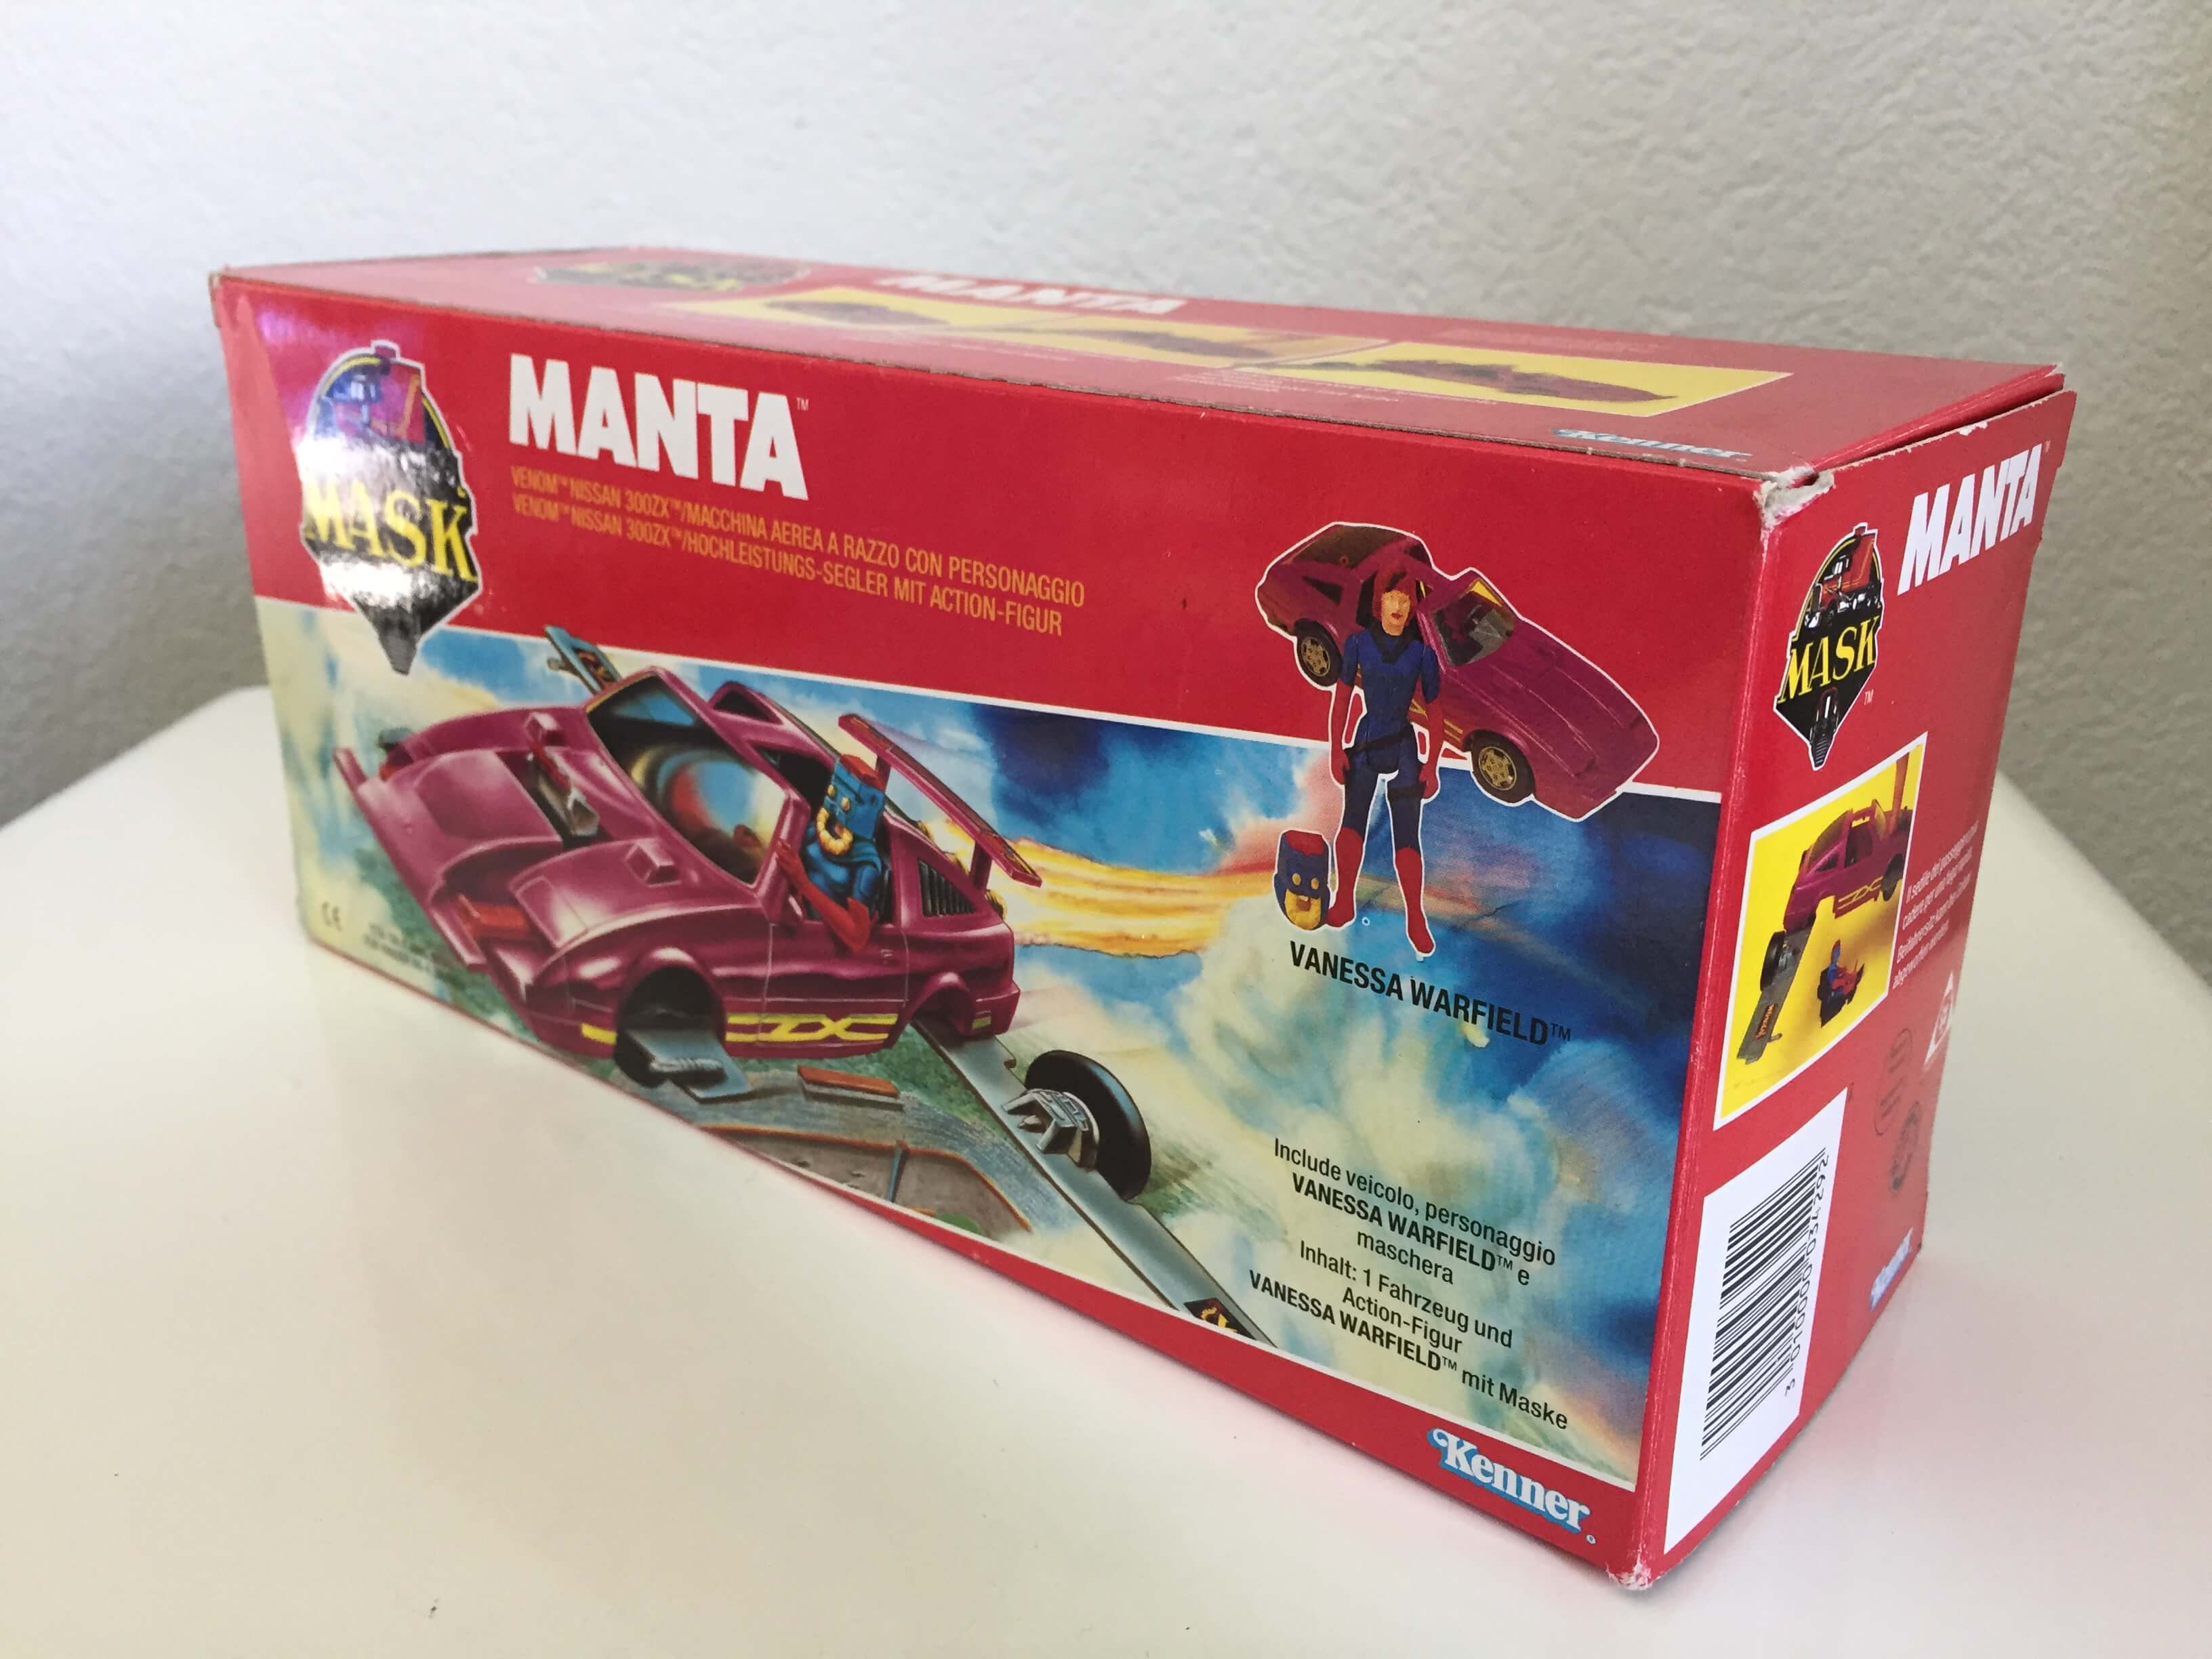 coupon for manta mask